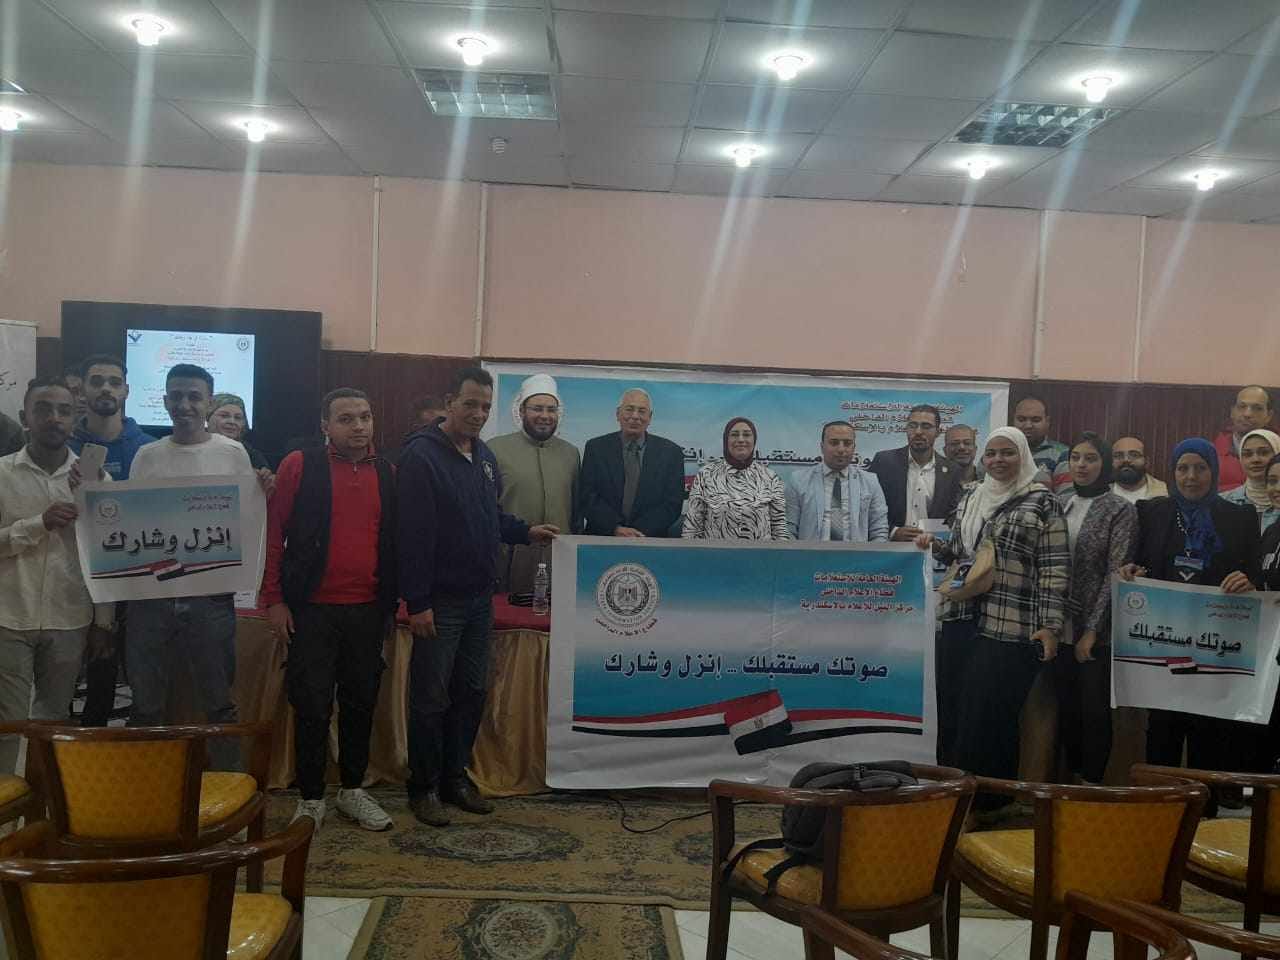 الانتخابات الرئاسية .. "شارك في بناء وطنك" ندوة في النيل للإعلام بـ الإسكندرية